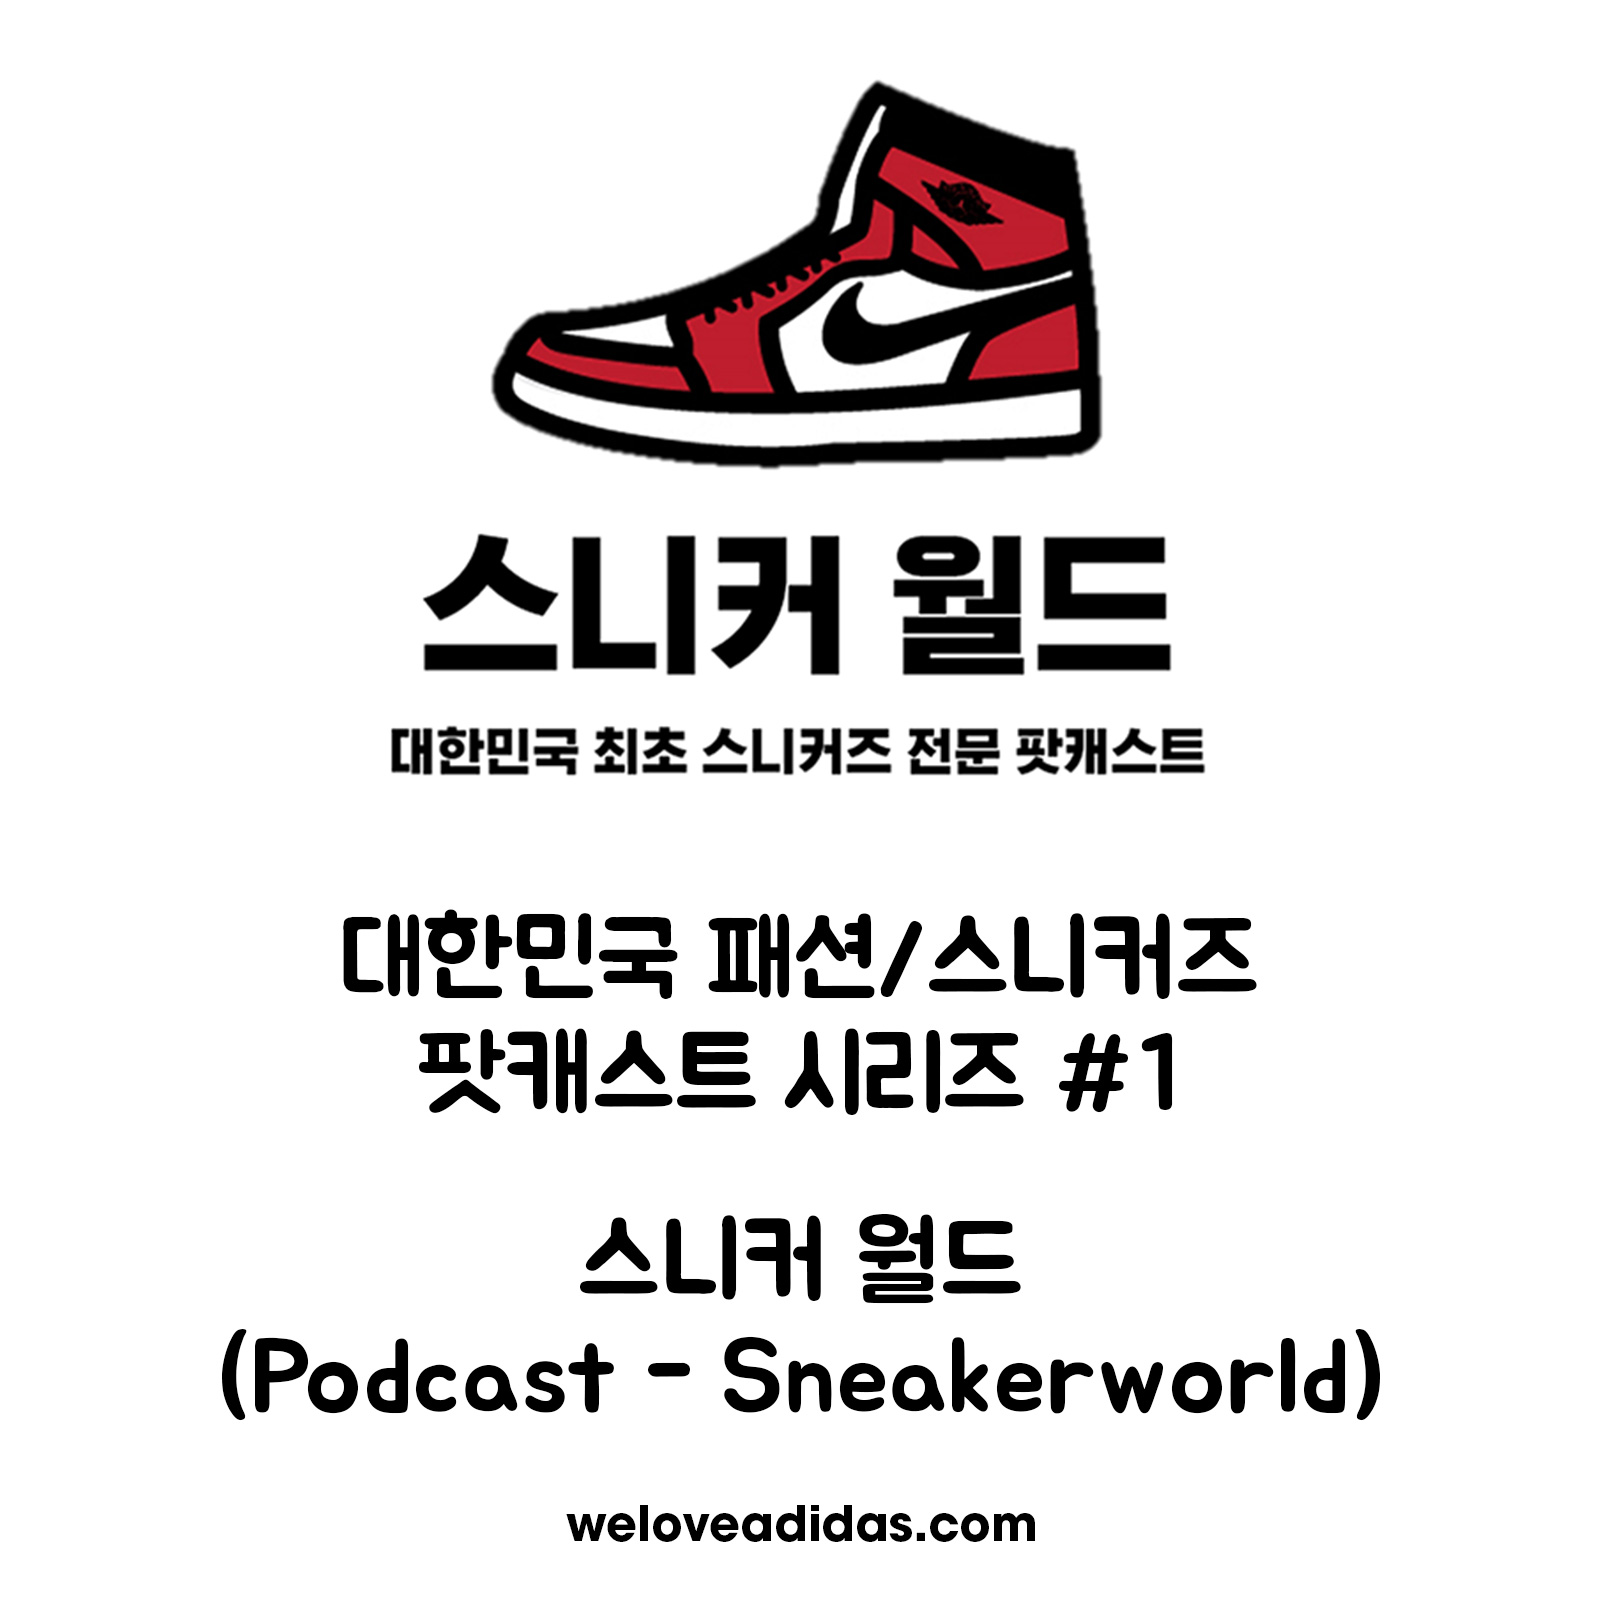 팟캐스트 - 스니커 월드(Podcast - Sneaker World)